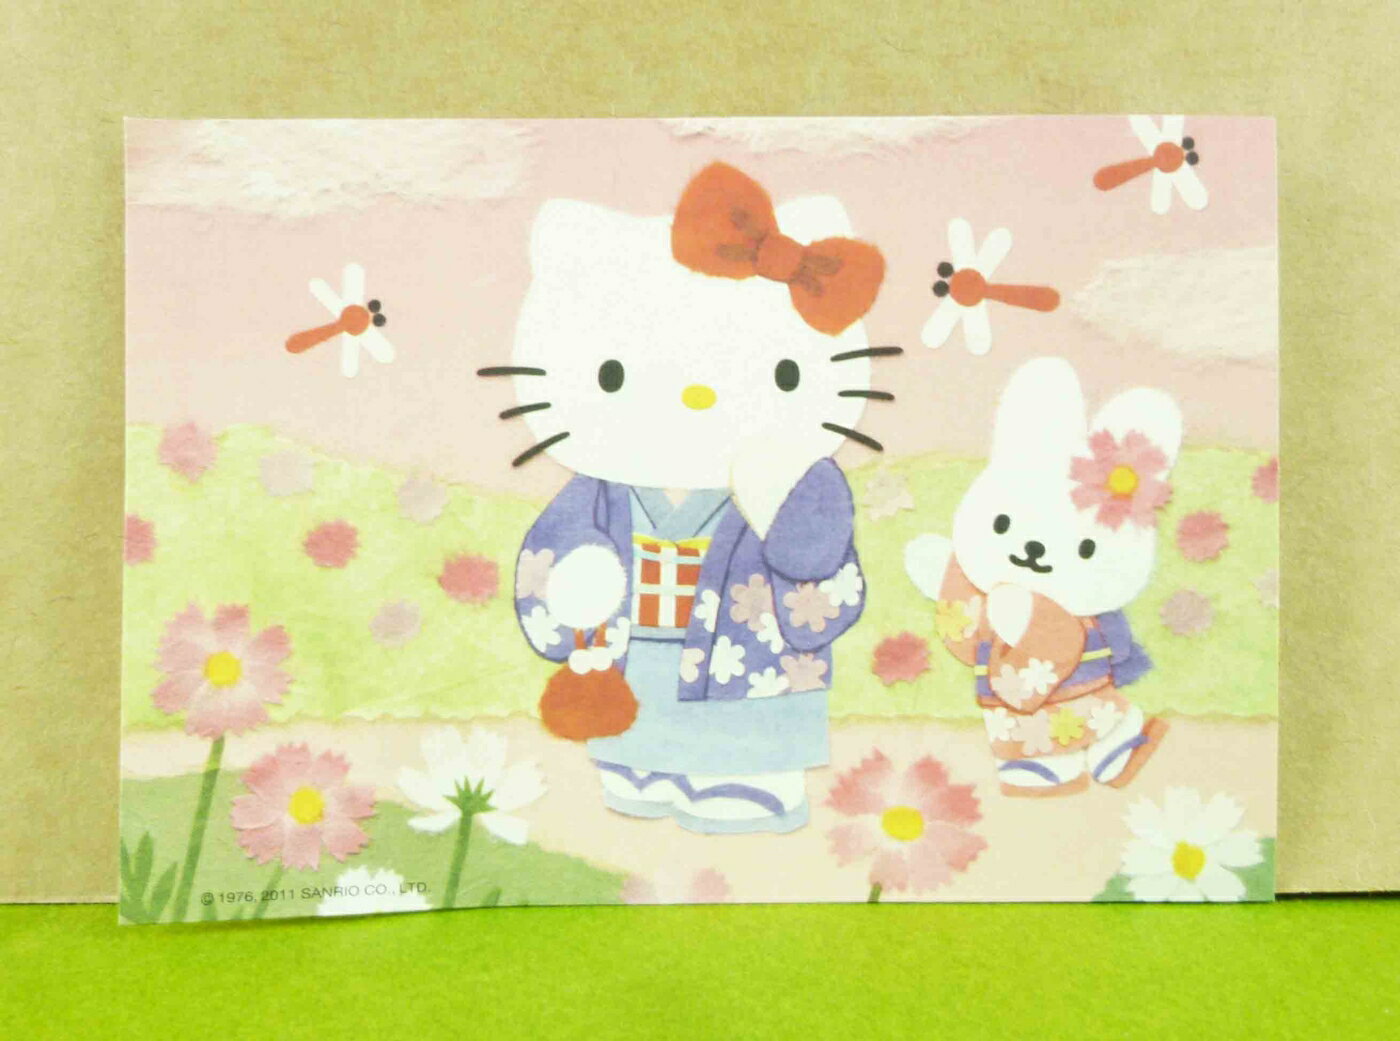 【震撼精品百貨】Hello Kitty 凱蒂貓 造型卡片-粉蜻蜓 震撼日式精品百貨